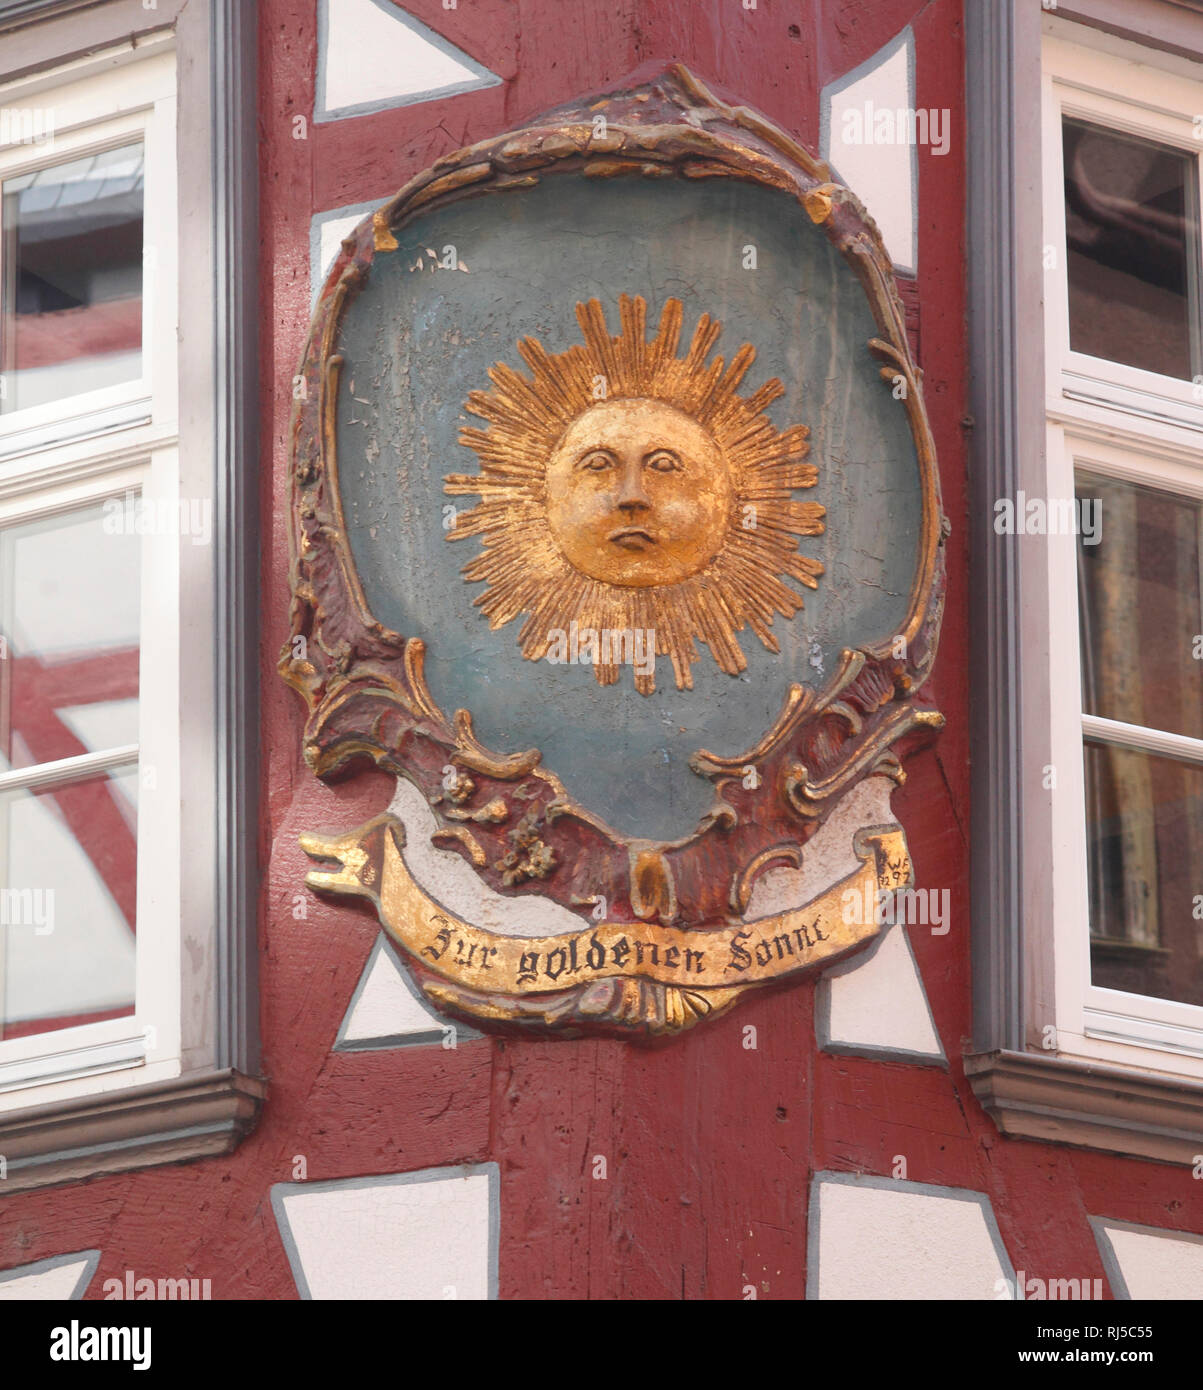 Verzierung, Detail, historisches Fachwerkhaus Zur Goldenen Sonne, Wetzlarer Altstadt, Wetzlar, Hessen, Deutschland, Europa Stockfoto